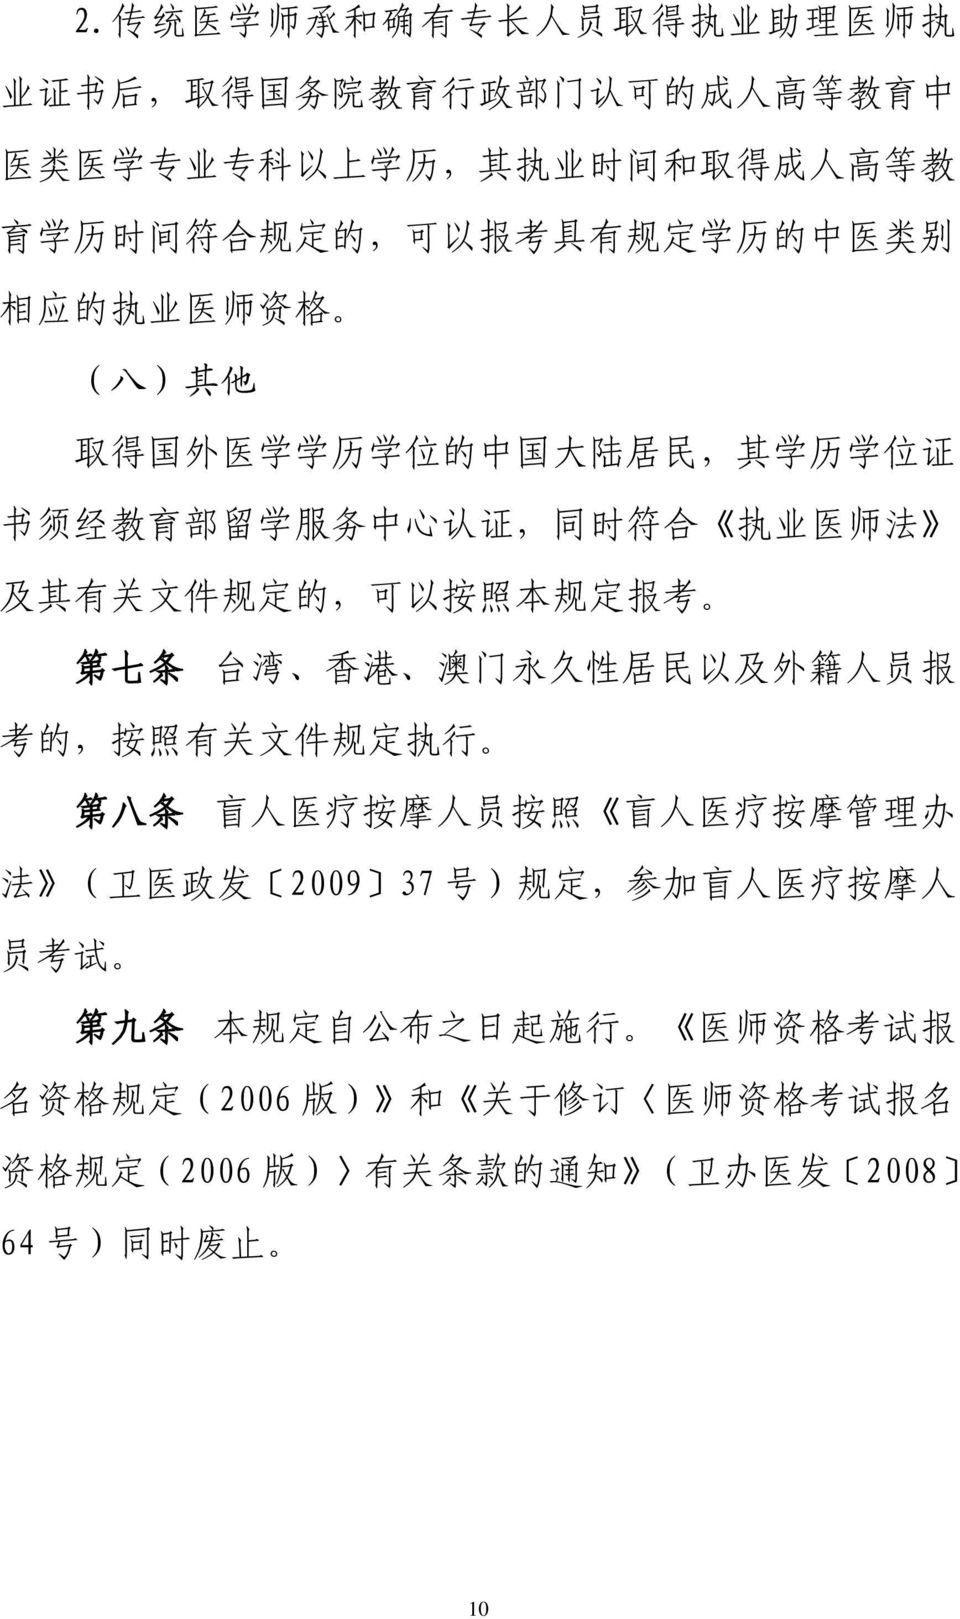 定 的, 可 以 按 照 本 规 定 报 考 第 七 条 台 湾 香 港 澳 门 永 久 性 居 民 以 及 外 籍 人 员 报 考 的, 按 照 有 关 文 件 规 定 执 行 第 八 条 盲 人 医 疗 按 摩 人 员 按 照 盲 人 医 疗 按 摩 管 理 办 法 ( 卫 医 政 发 2009 37 号 ) 规 定, 参 加 盲